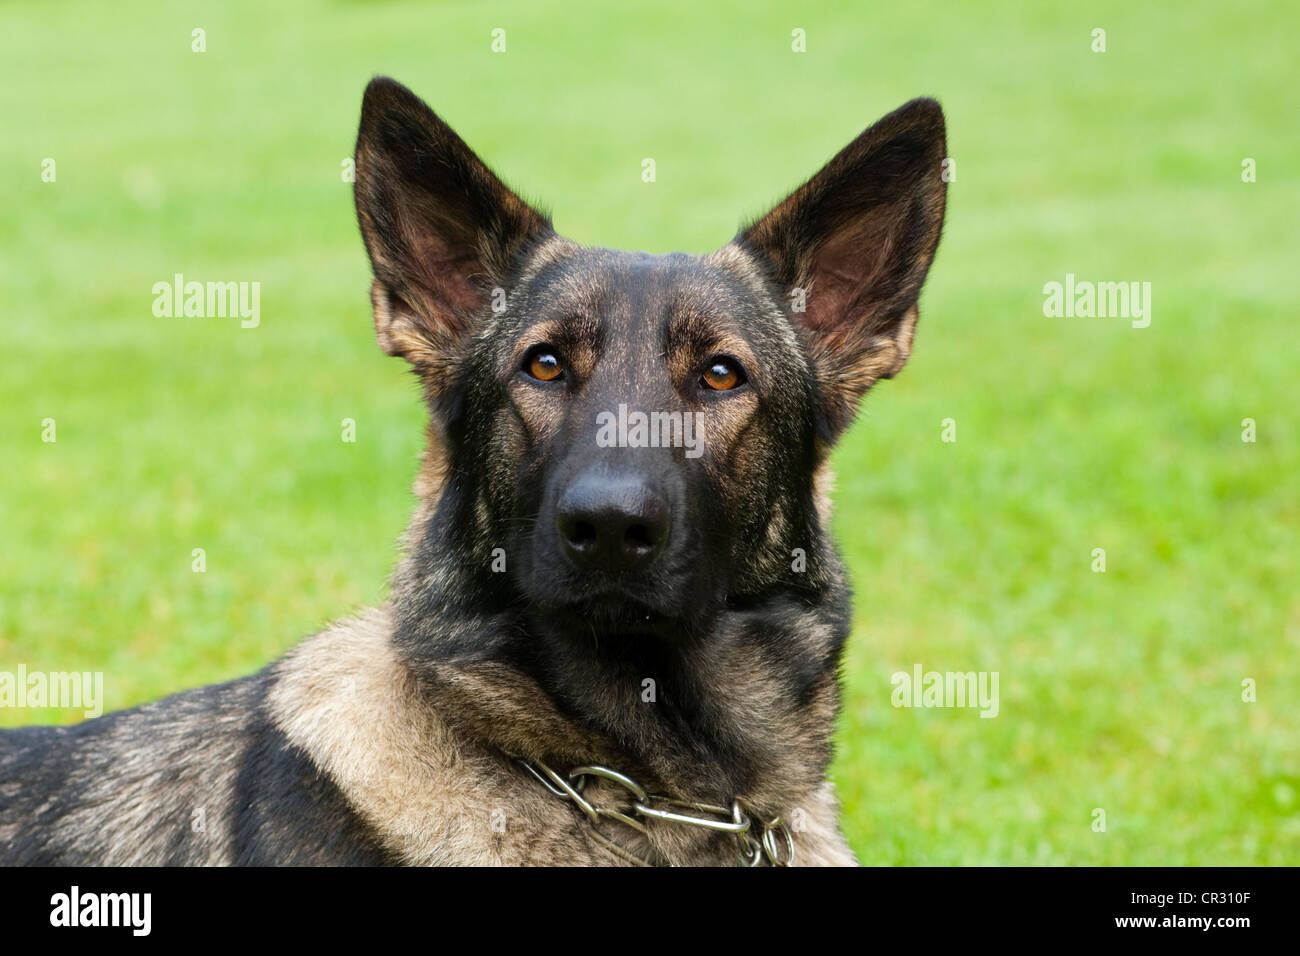 German shepherd dog, Alsatian, portrait Stock Photo